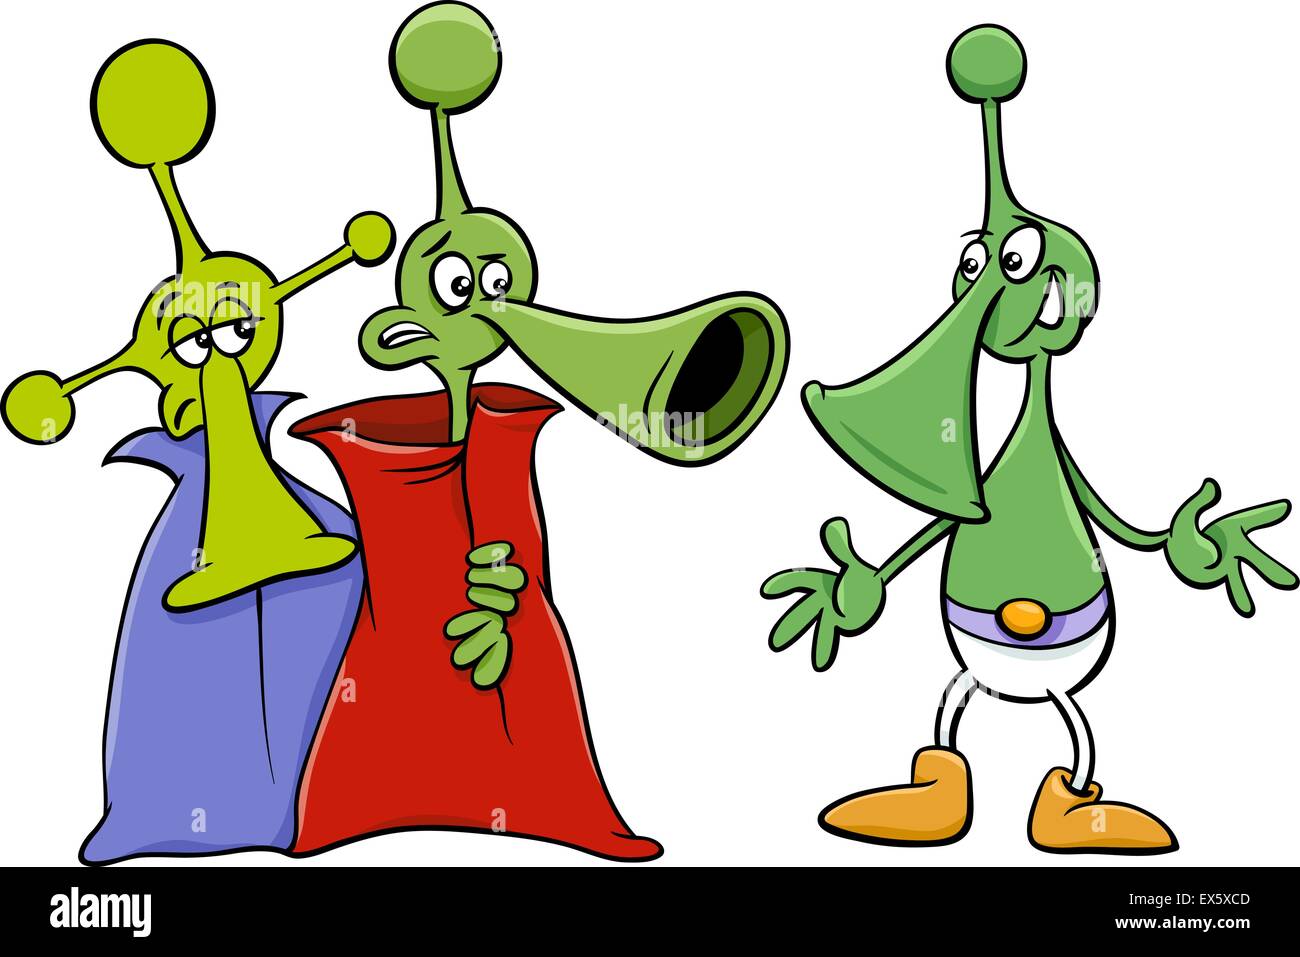 Cartoon-Illustration von lustigen Aliens oder Marsmenschen Comic-Figuren Stock Vektor